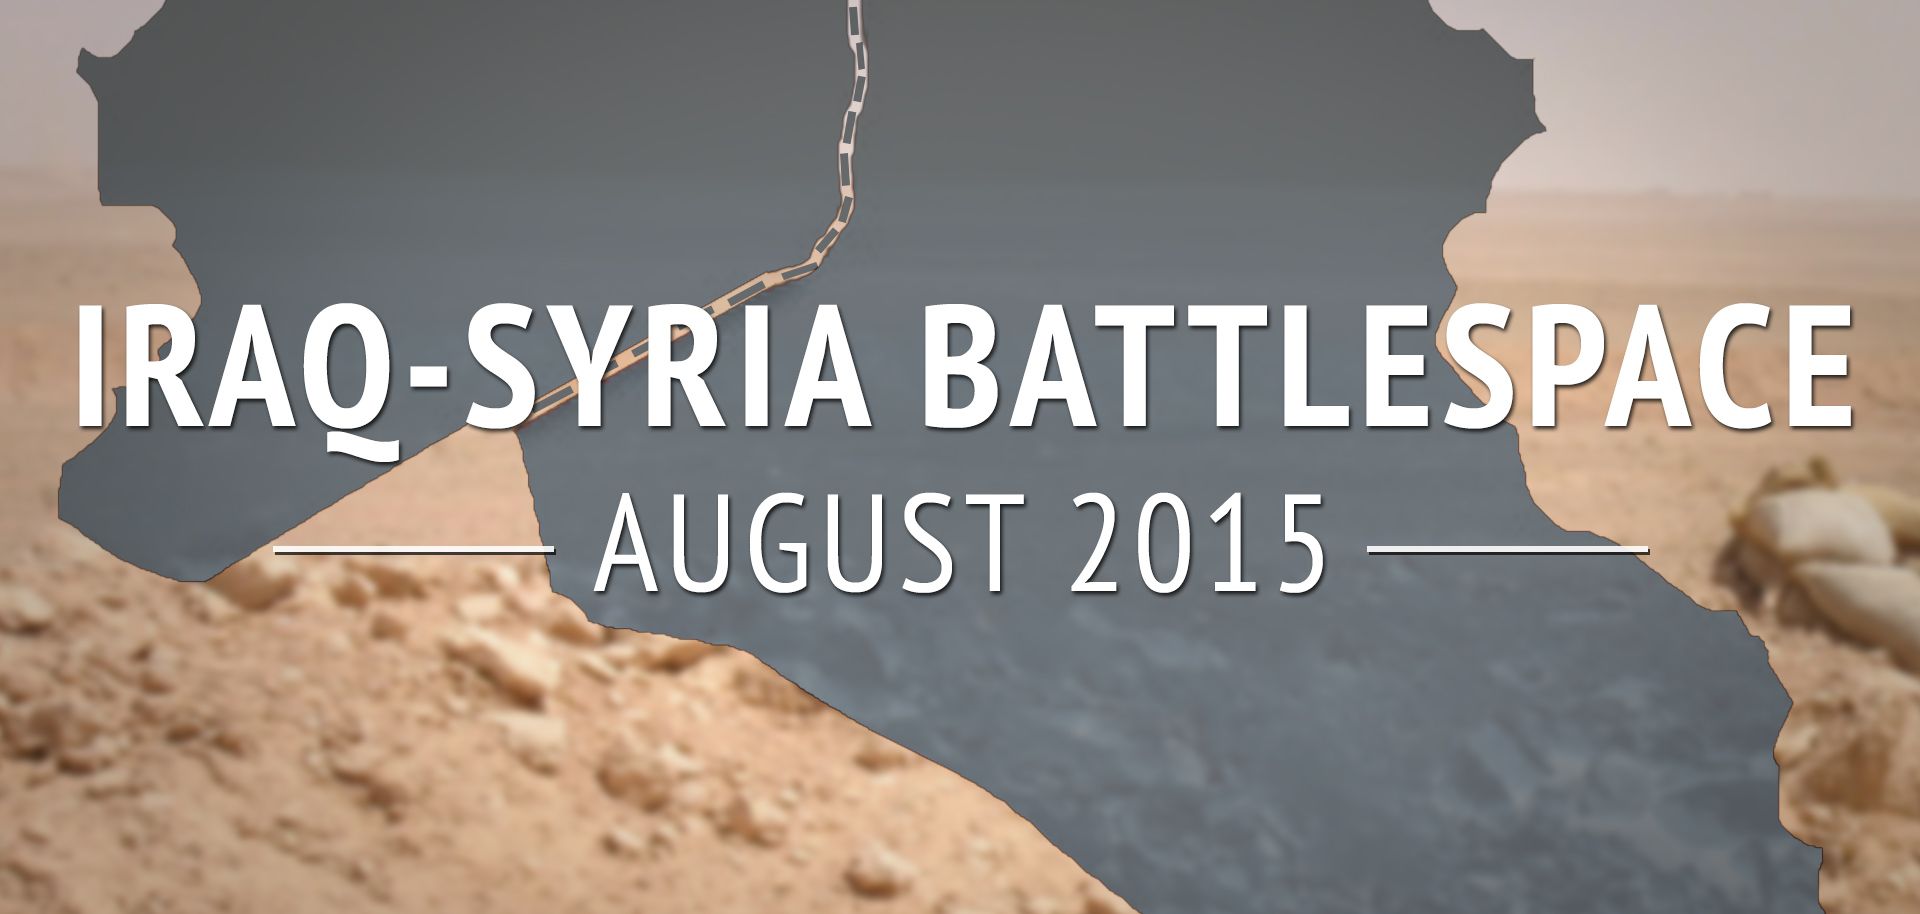 Iraq-Syria Battlespace: August 2015 (DISPLAY)